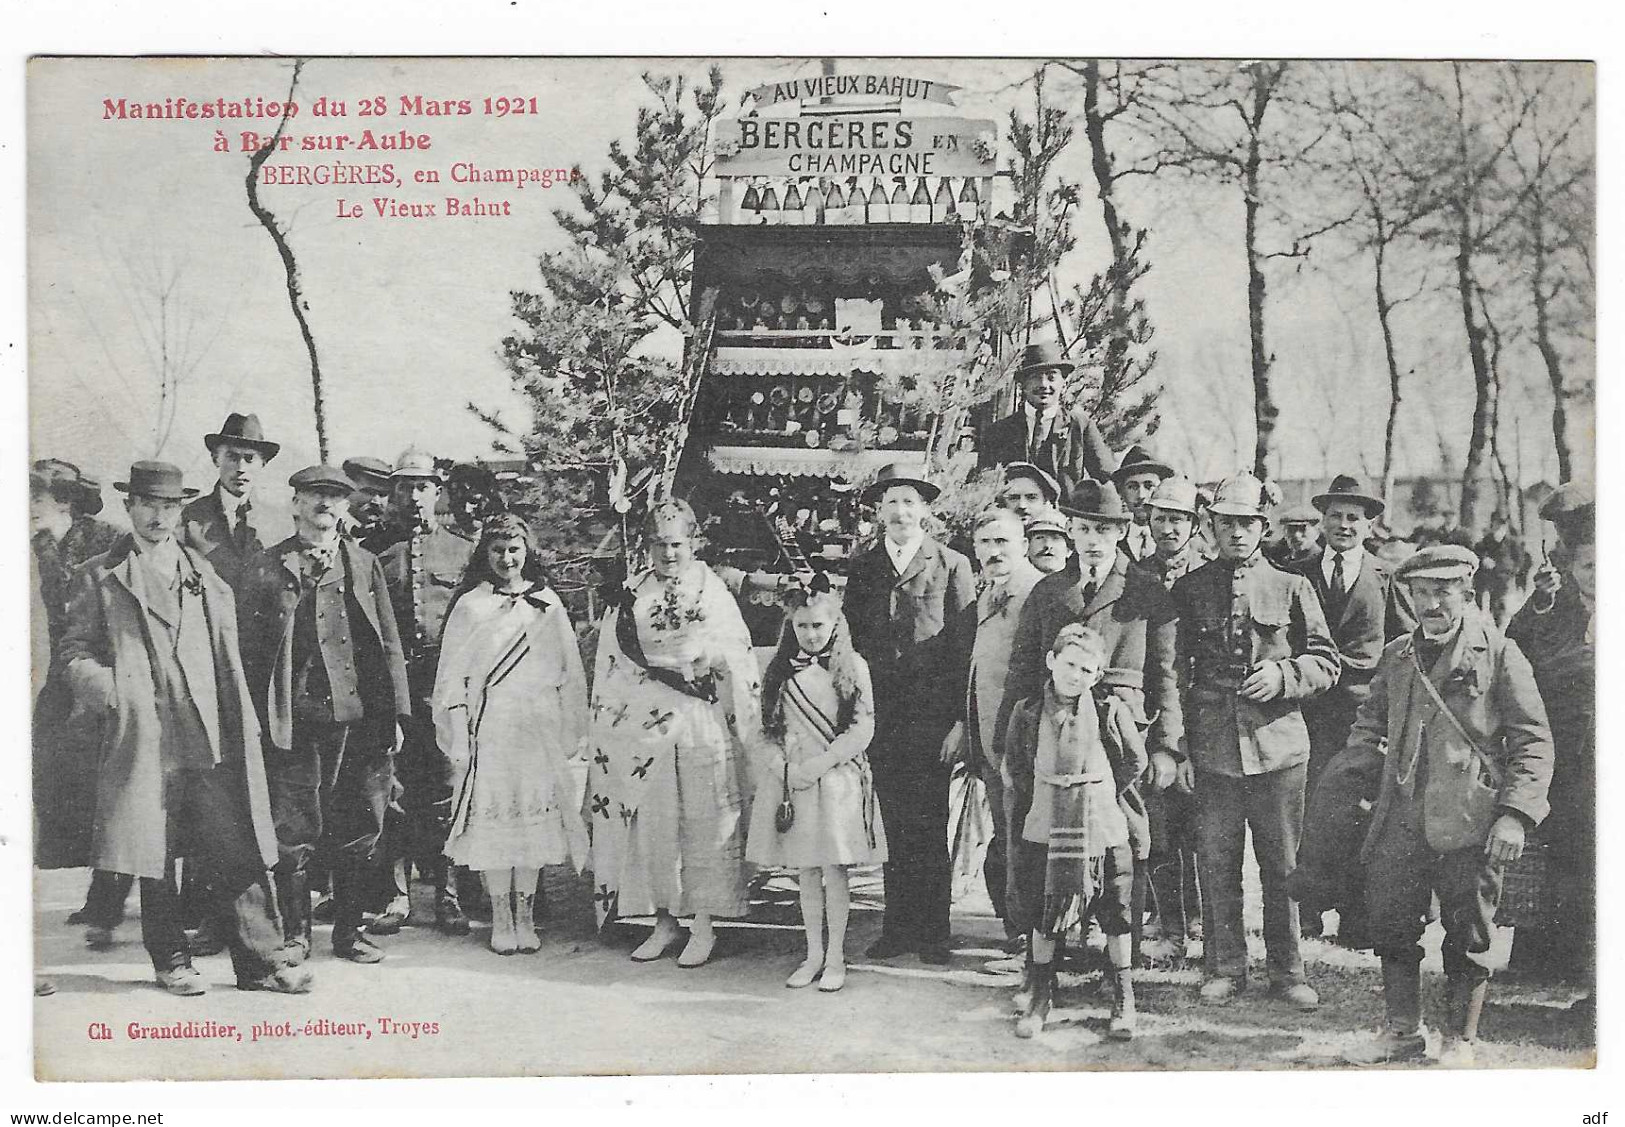 CPA MANIFESTATION DU 28 MARS 1921 ( FETES DU CHAMPAGNE ) A BAR SUR AUBE, LE VIEUX BAHUT, BERGERES, AUBE 10 - Bar-sur-Aube